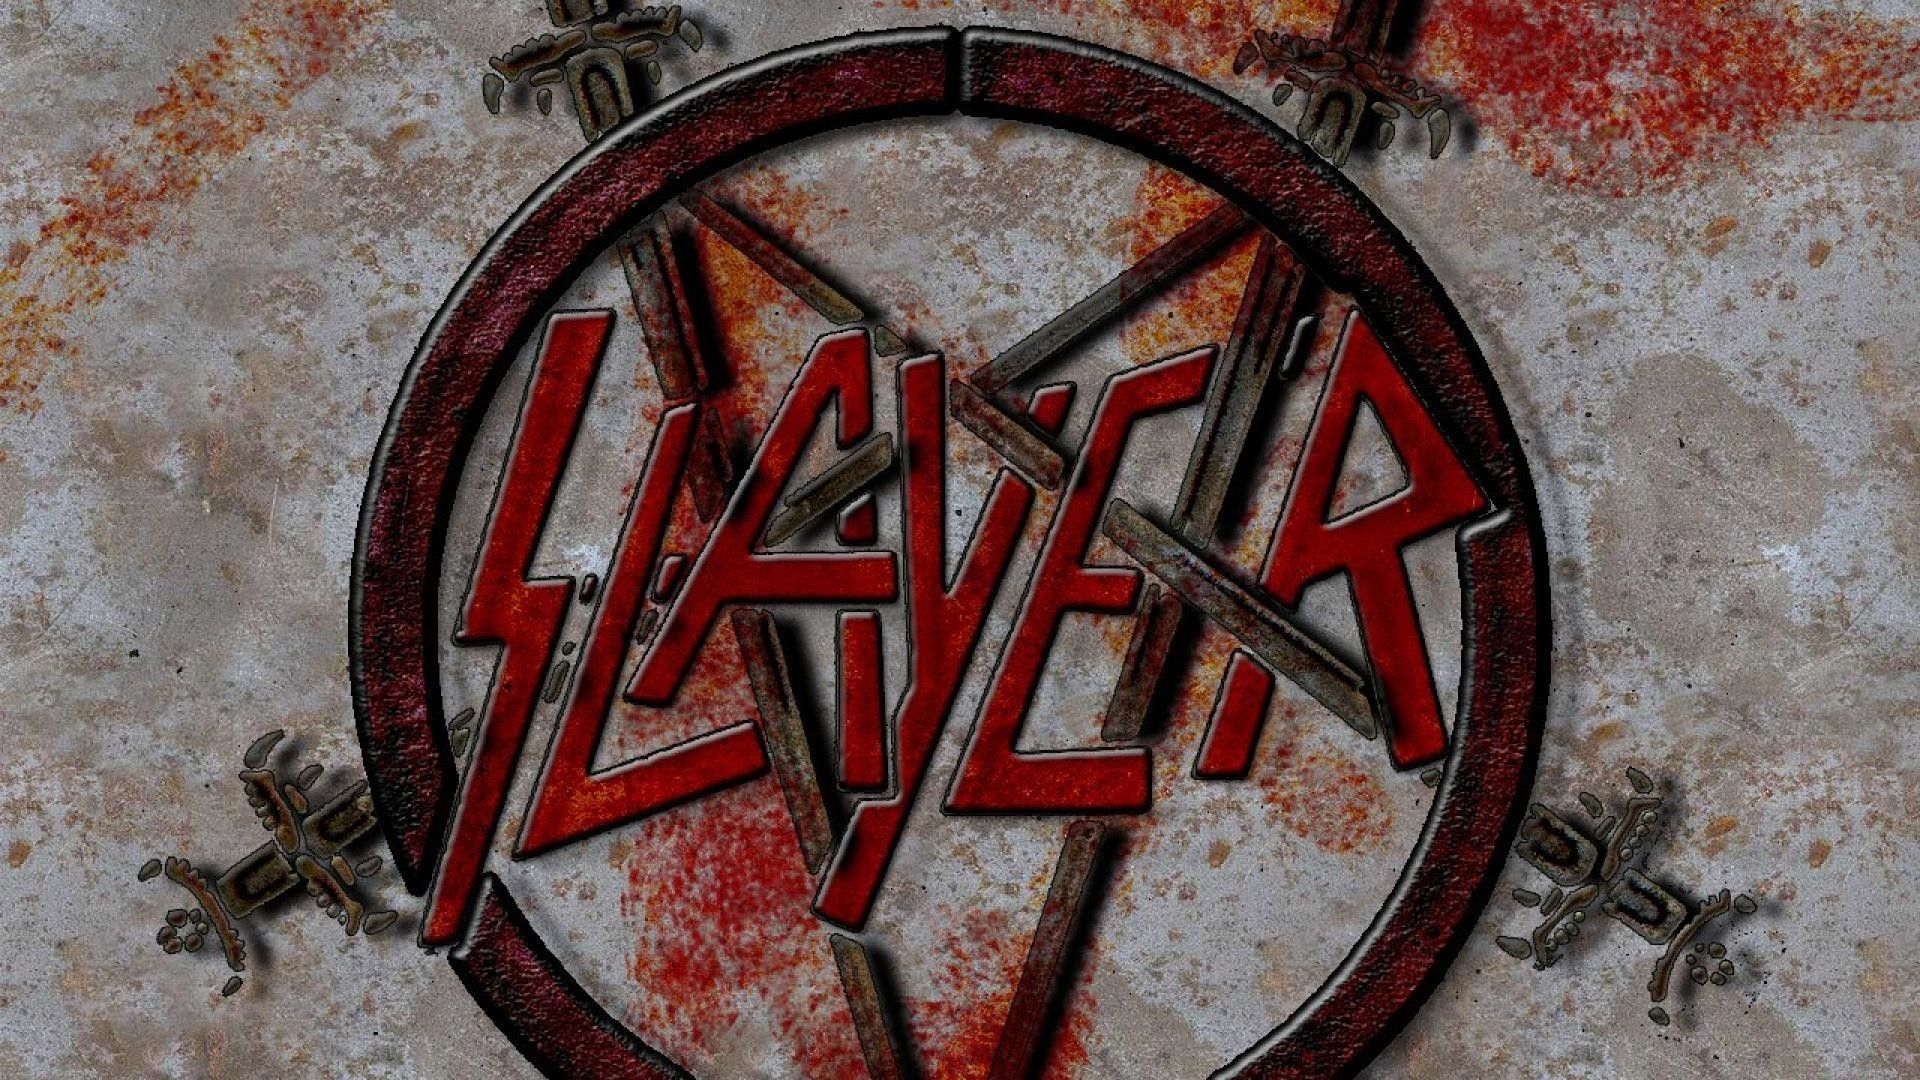 1920x1080 Slayer Wallpapers 1920X1080 Windows 10 | Thrash metal, Slayer, Slayer band